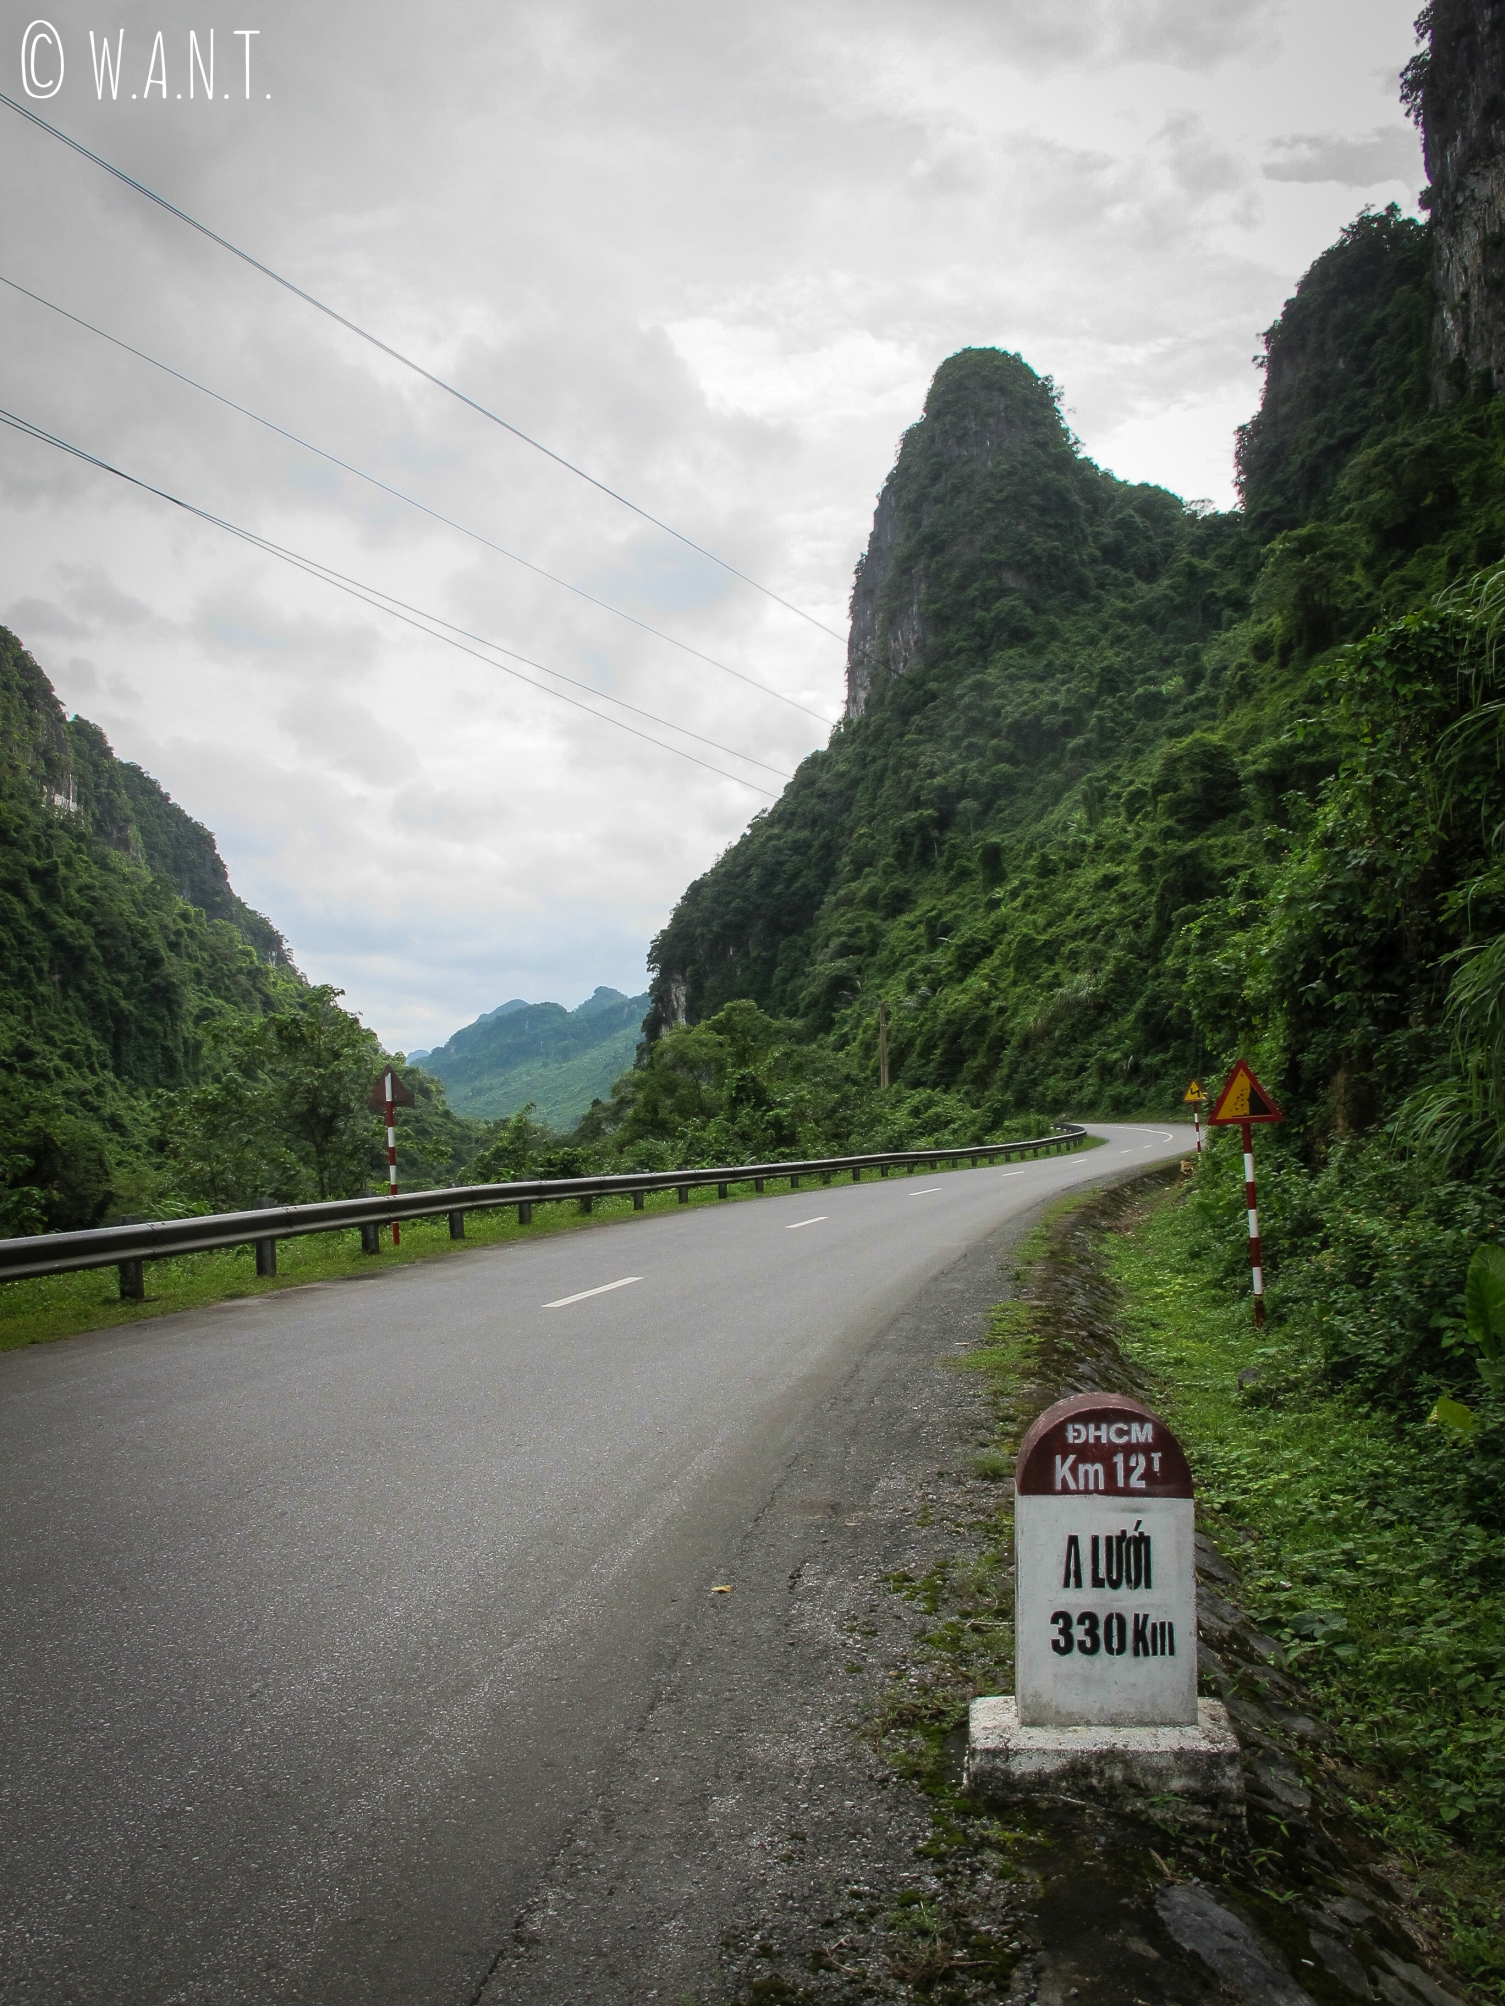 Une boucle à moto peut être faite à l'intérieur du parc national Phong Nha-Ke Bang